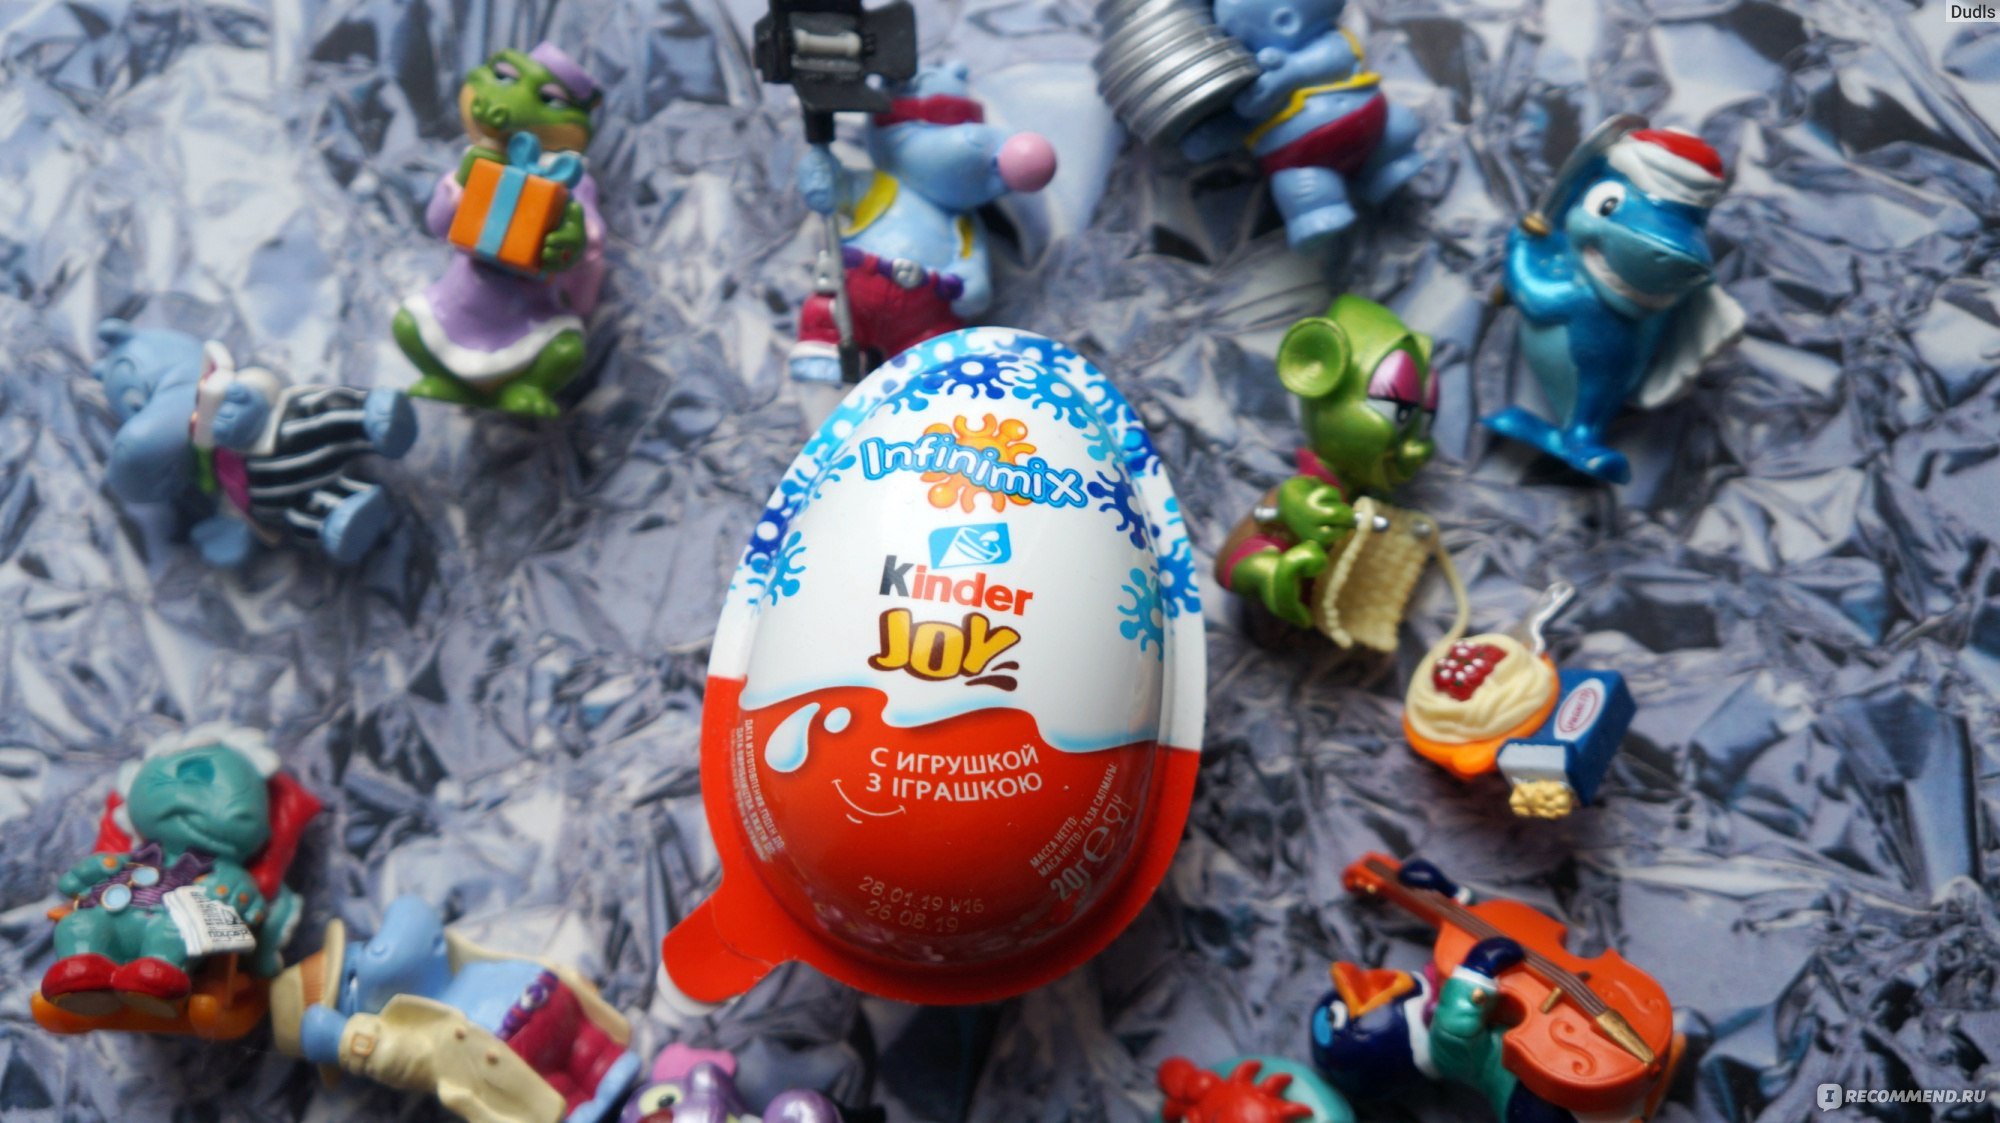 Включите kinder. Киндер человечек. Игрушки открытые из киндера. Новогоднее шоколадное яйцо с игрушкой. Киндеры шоколадные яйца с сюрпризом.